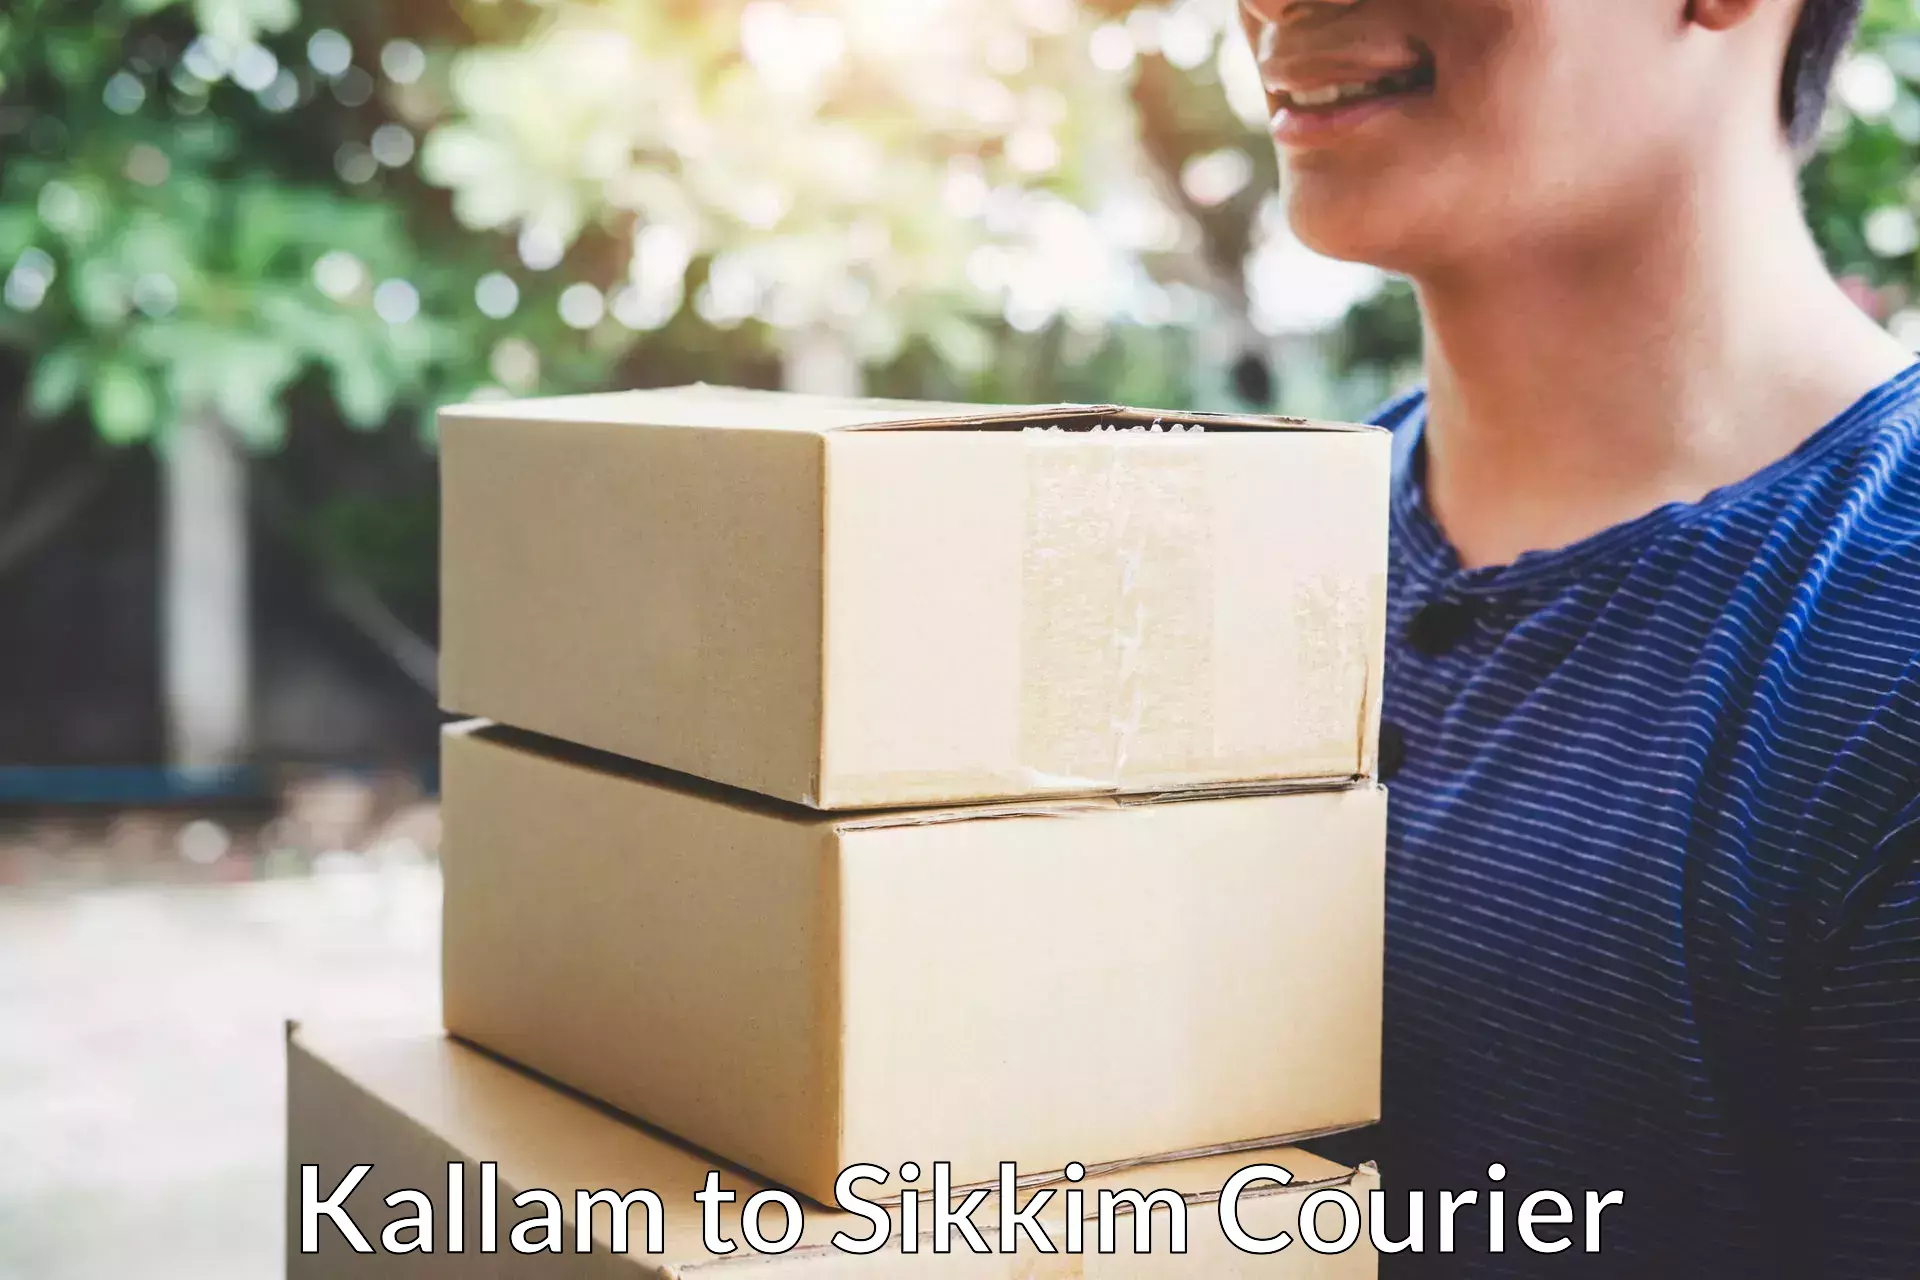 Furniture moving experts Kallam to Mangan